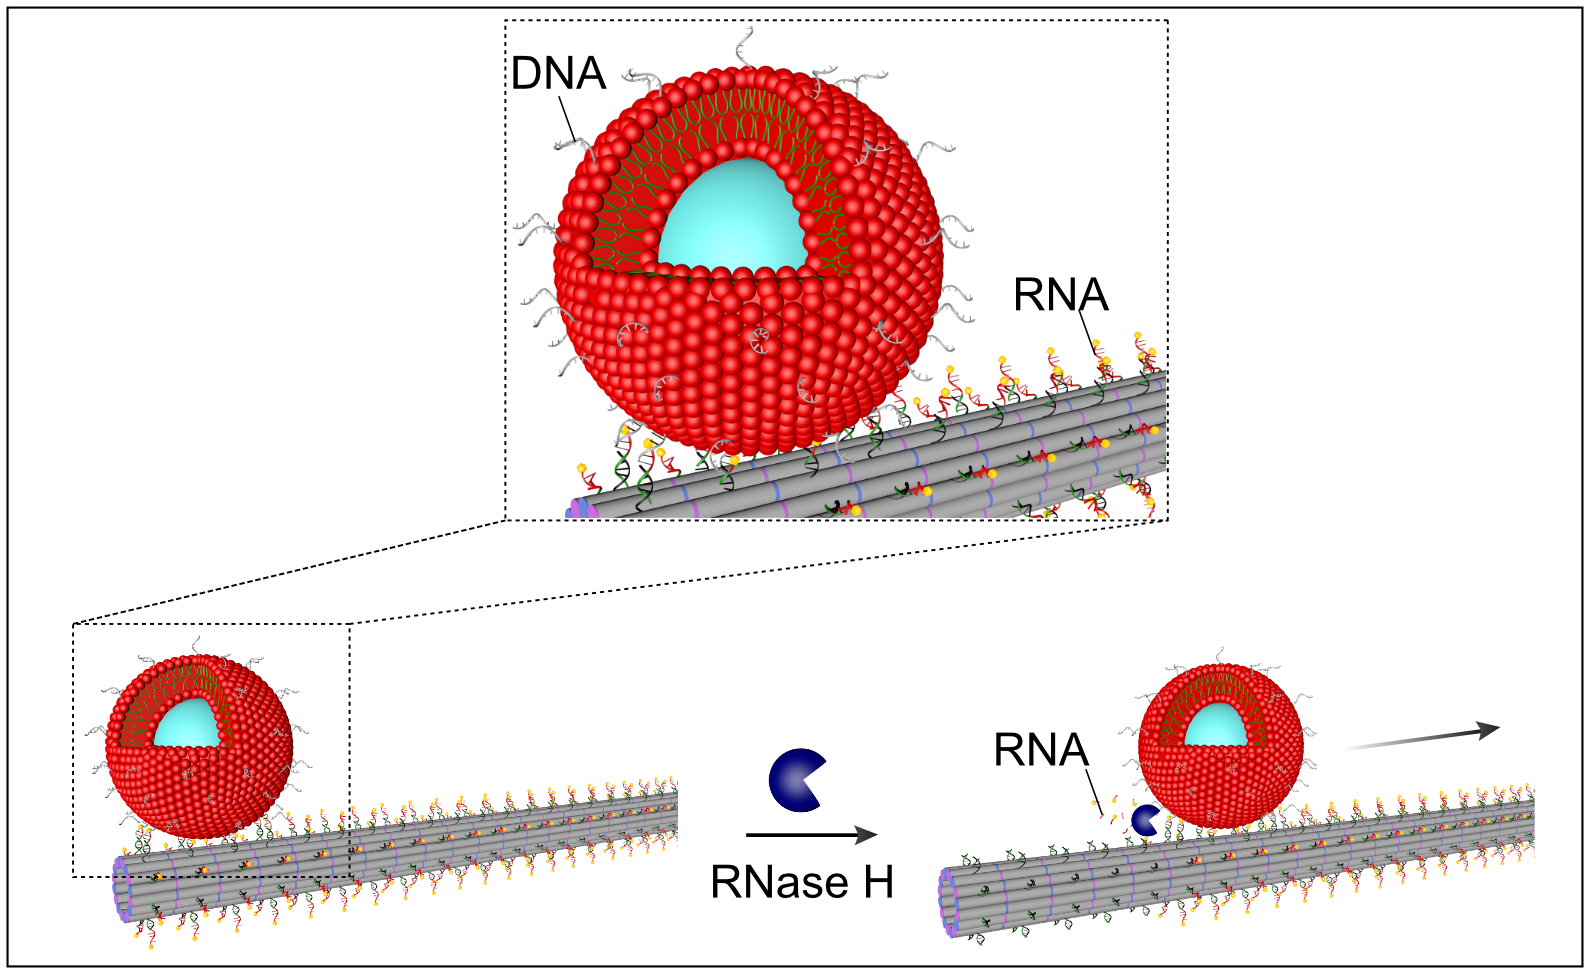 Zeichnerische Darstellung des durch Verdau mit RNase H induzierten Transportmechanismus eines rot dargestellten Vesikels entlang grau gefärbter Filamente.